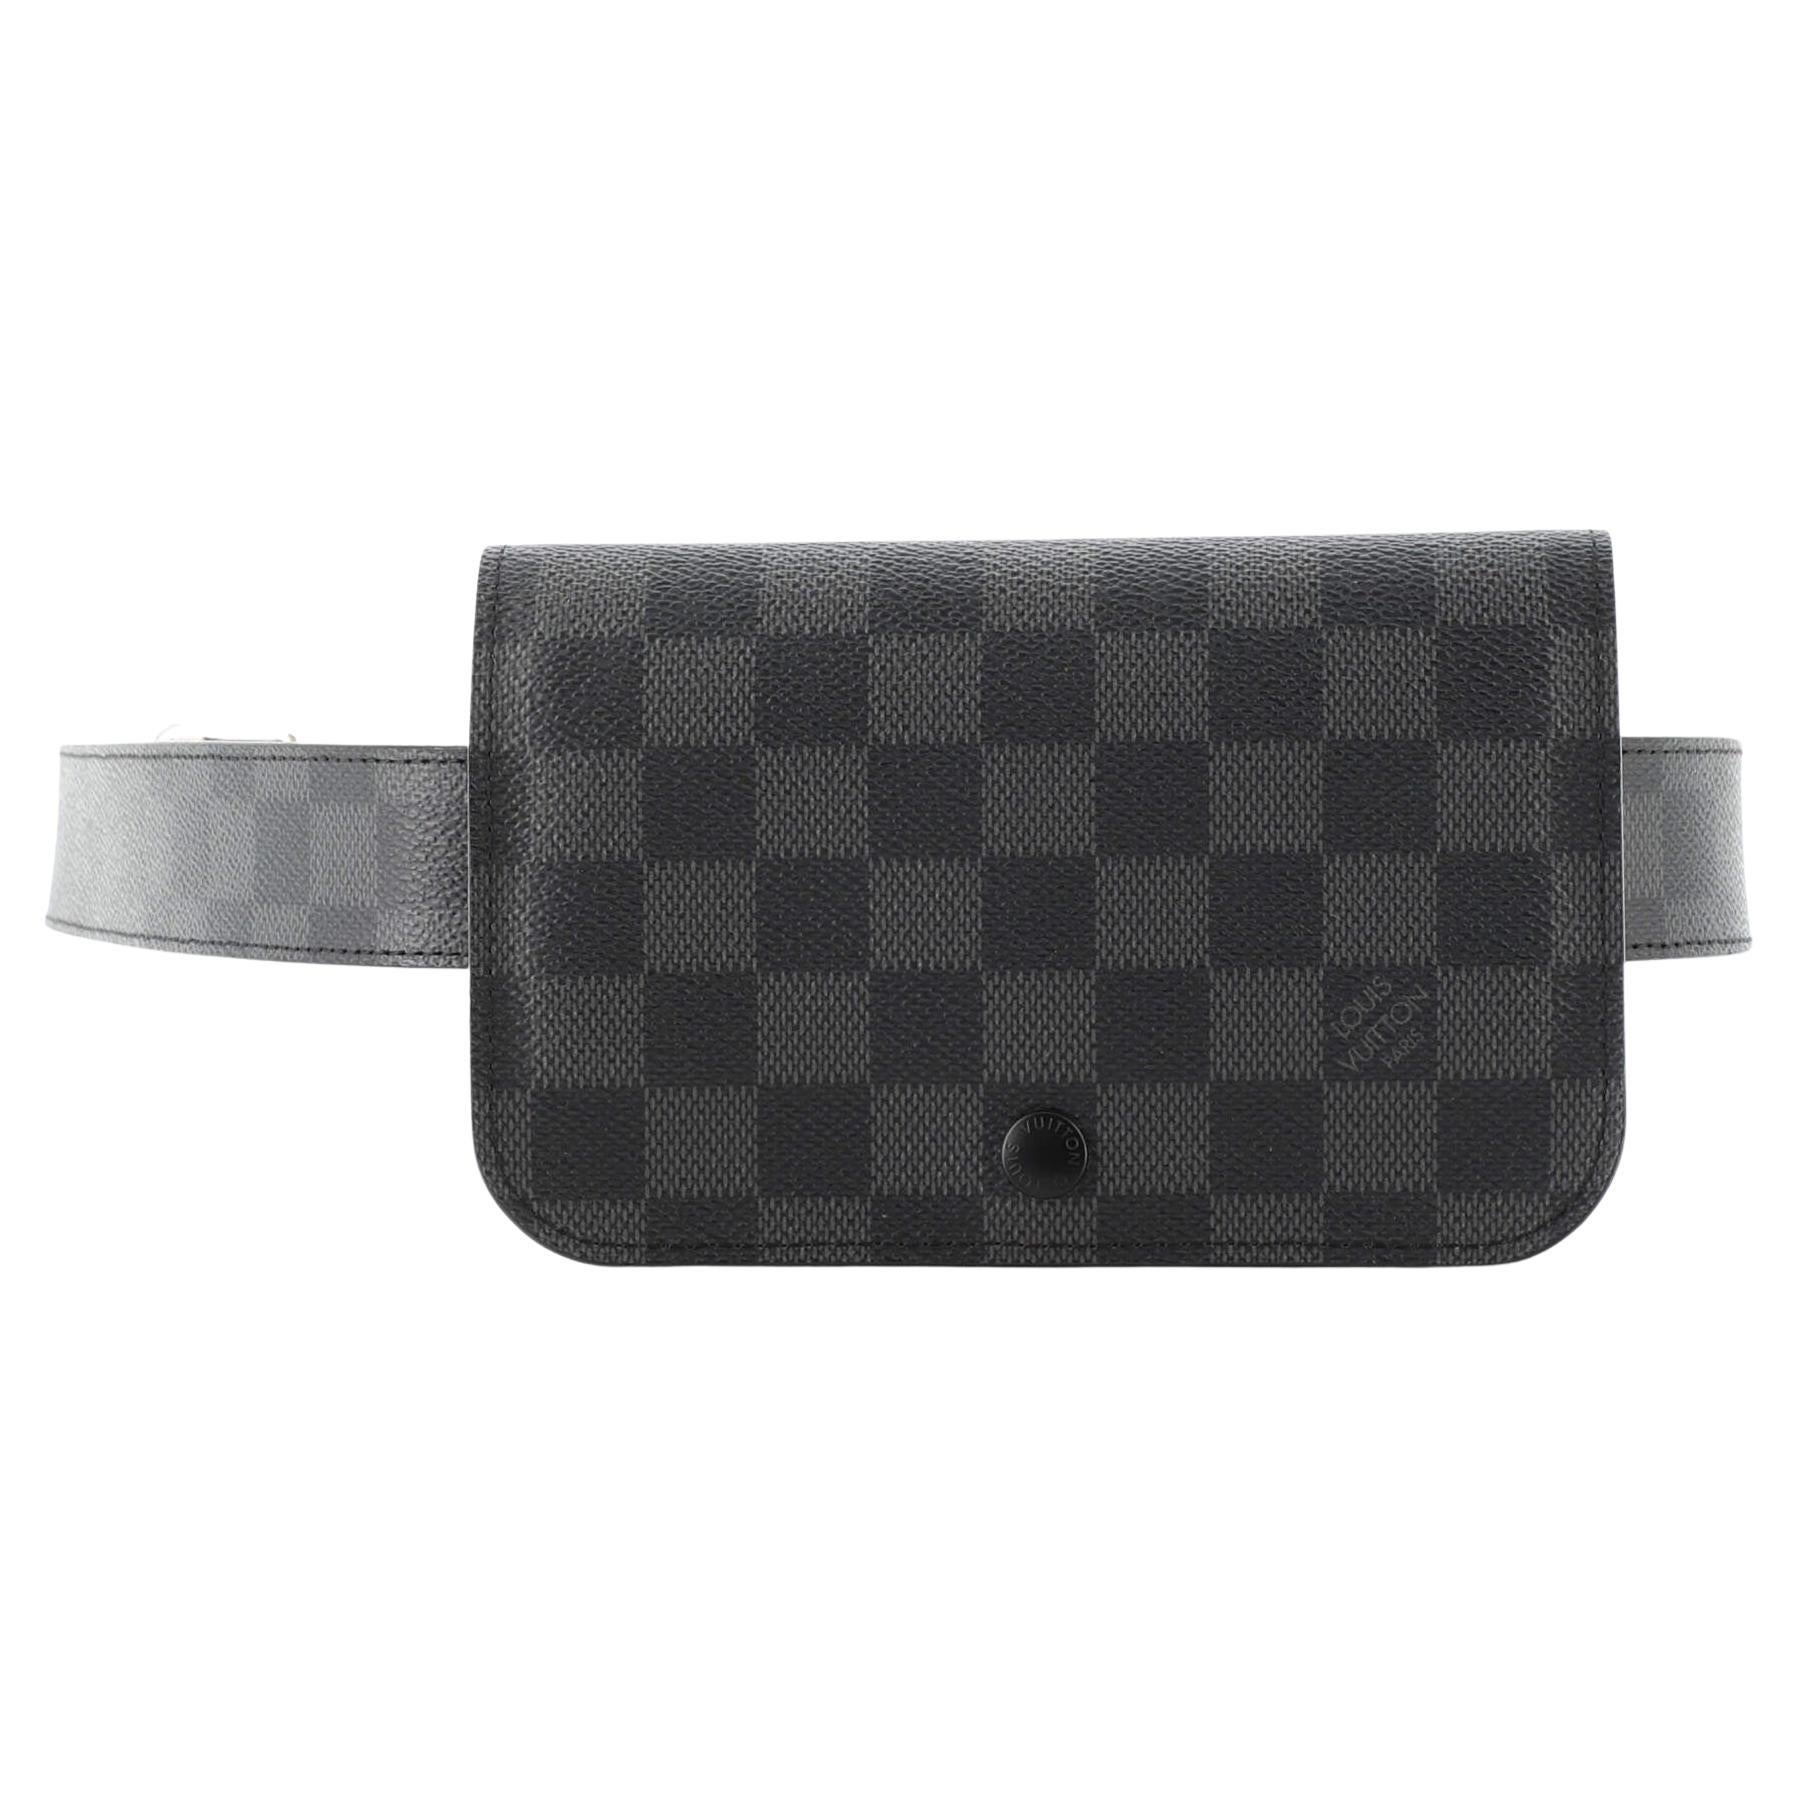 Louis Vuitton Damier Graphite Canvas Belt 95/38 M9808 #60574 - Monty's